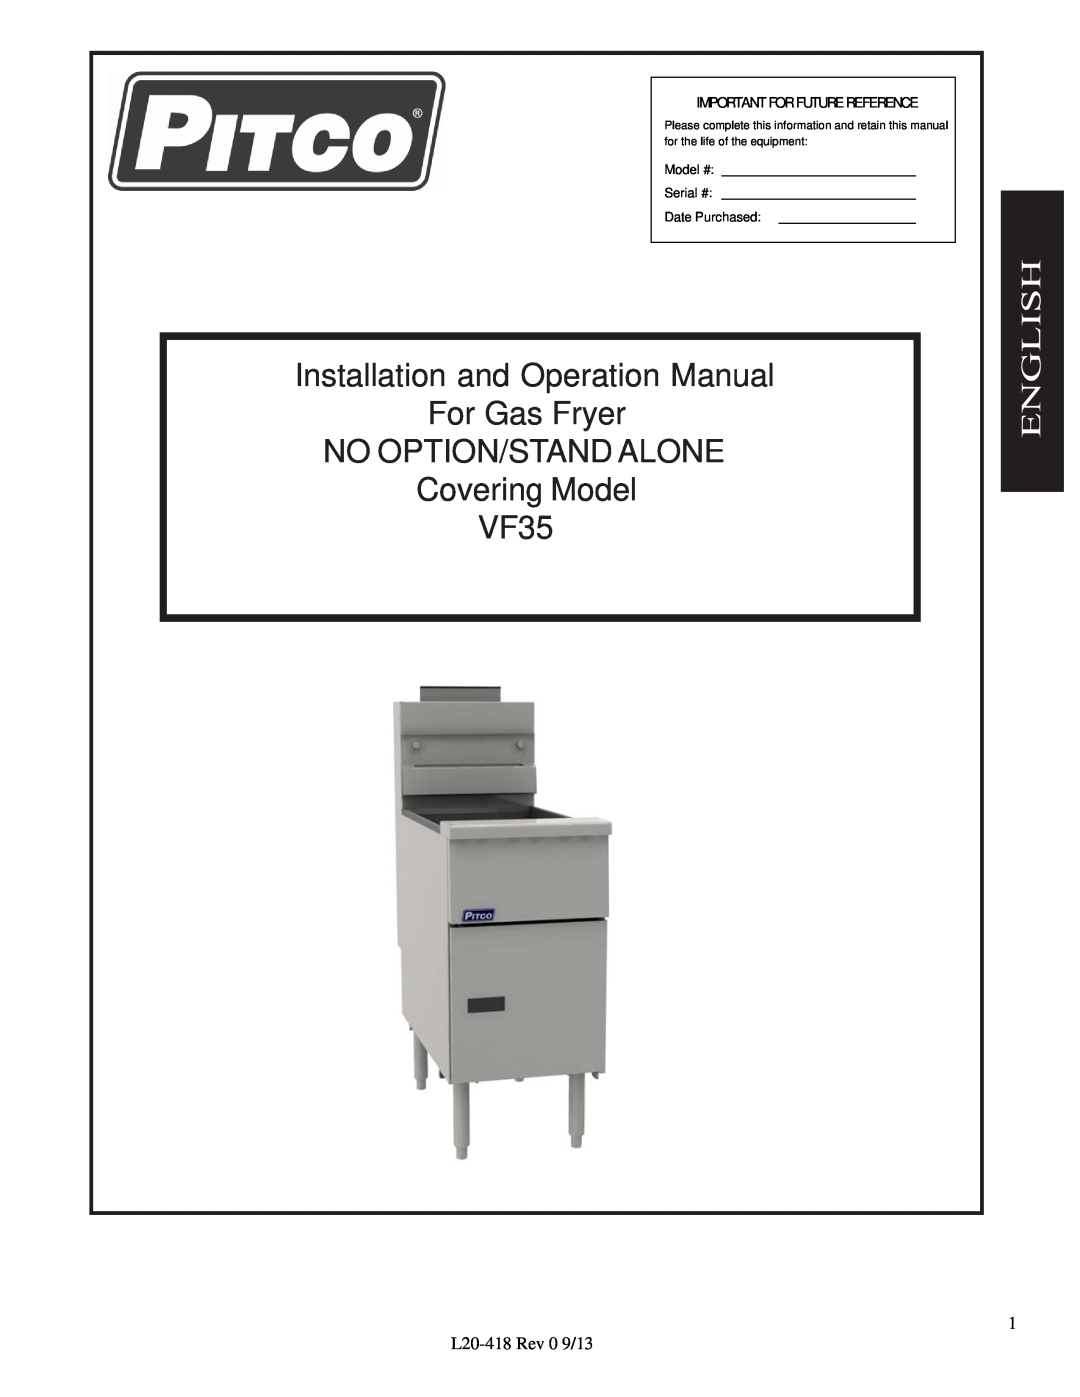 Pitco Frialator manual L22-382Rev 1 8/14, Exploded Parts Manual, VF35 Gas Fryer Models, English 